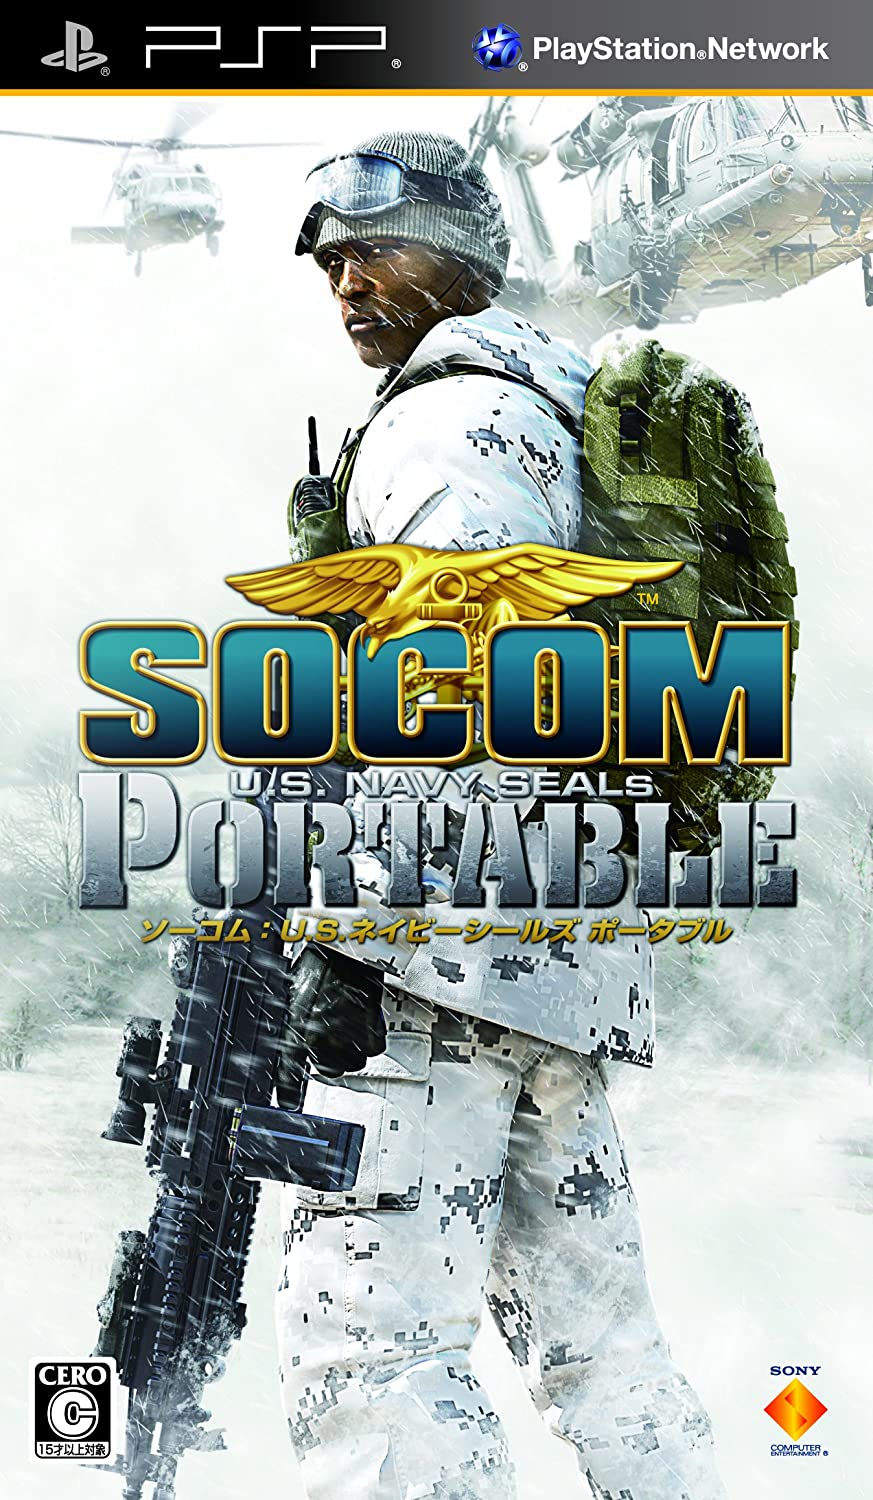 SOCOM: U.S. Navy SEALs Fireteam Bravo 3 for PSP, SOCOM Fire…